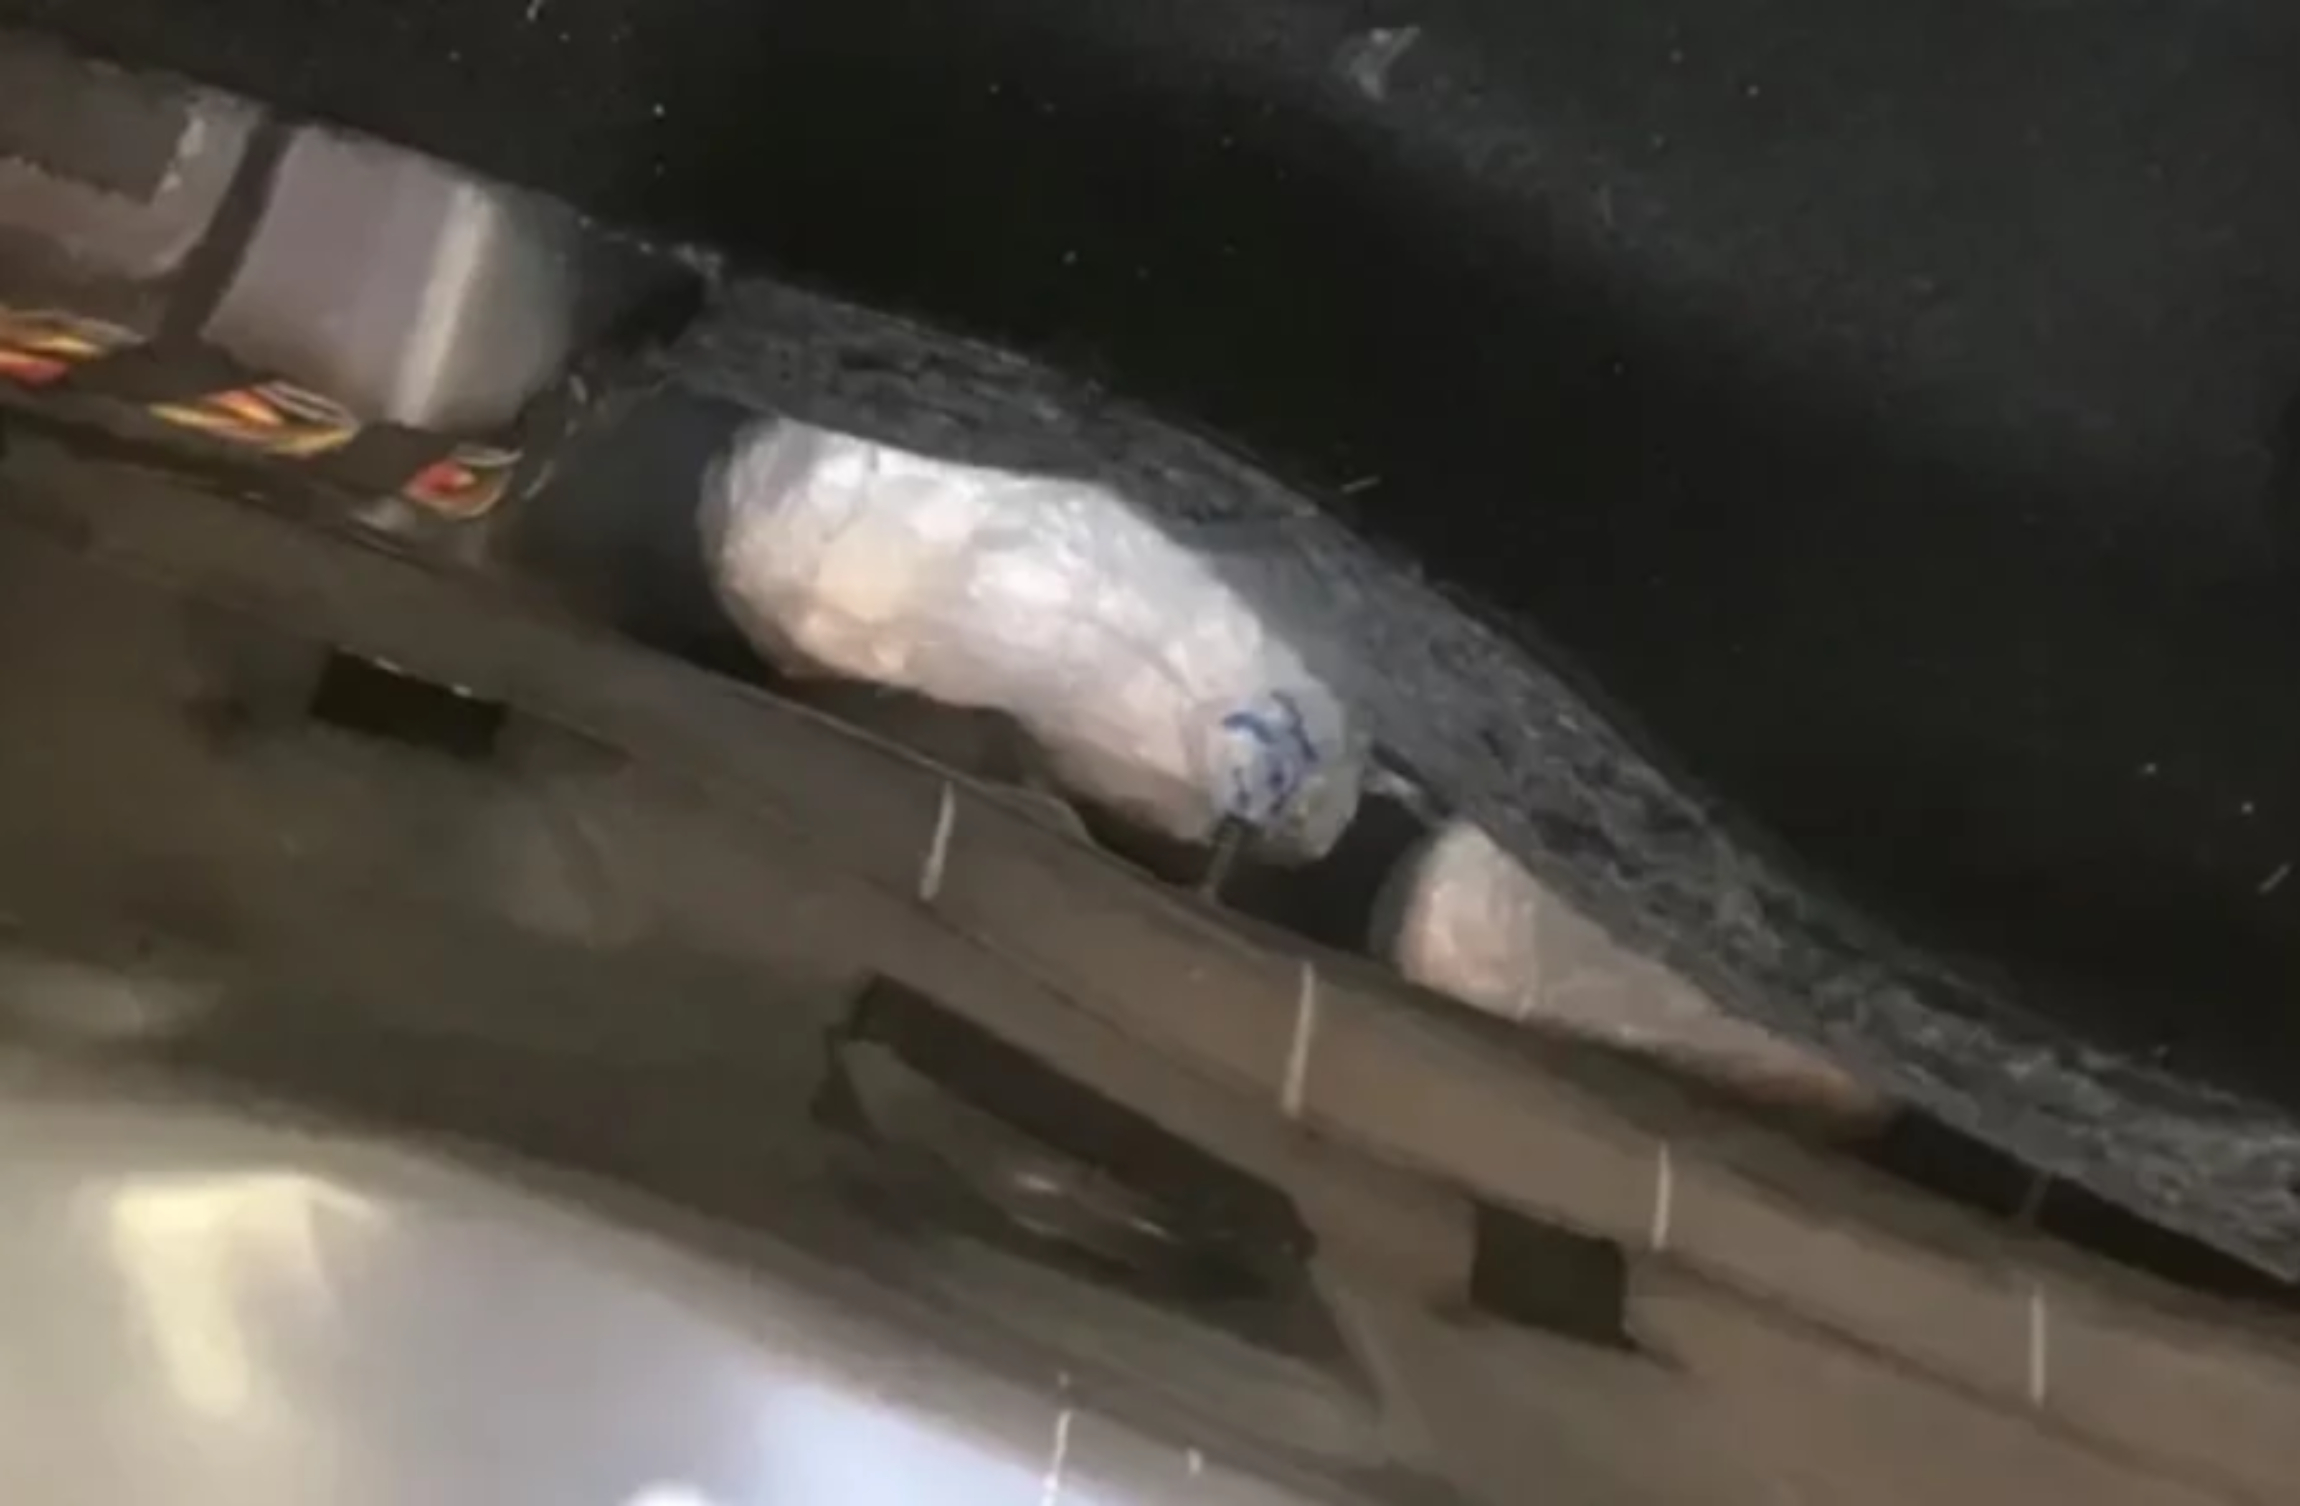 Βίντεο από τη στιγμή εντοπισμού κοκαΐνης στο αυτοκίνητο παίκτη ριάλιτι